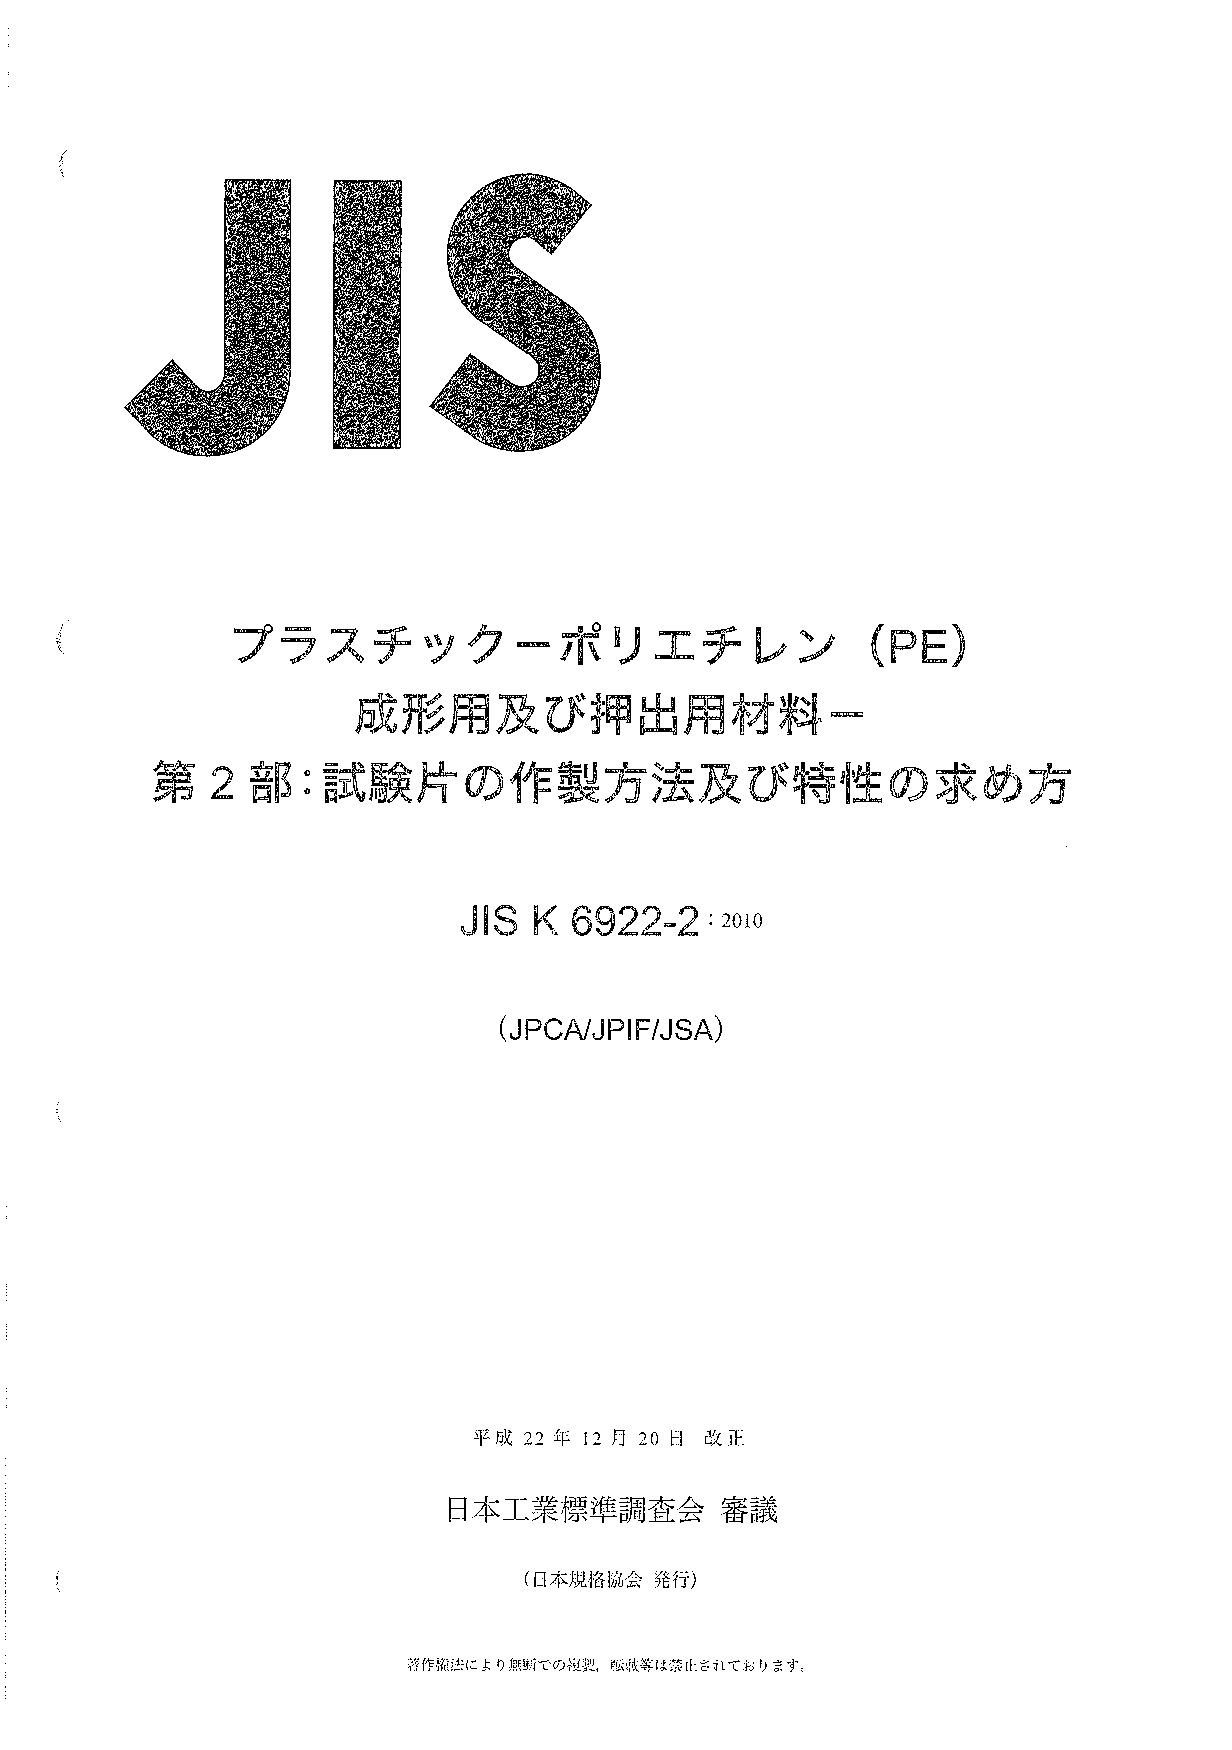 JIS K 6922-2:2010